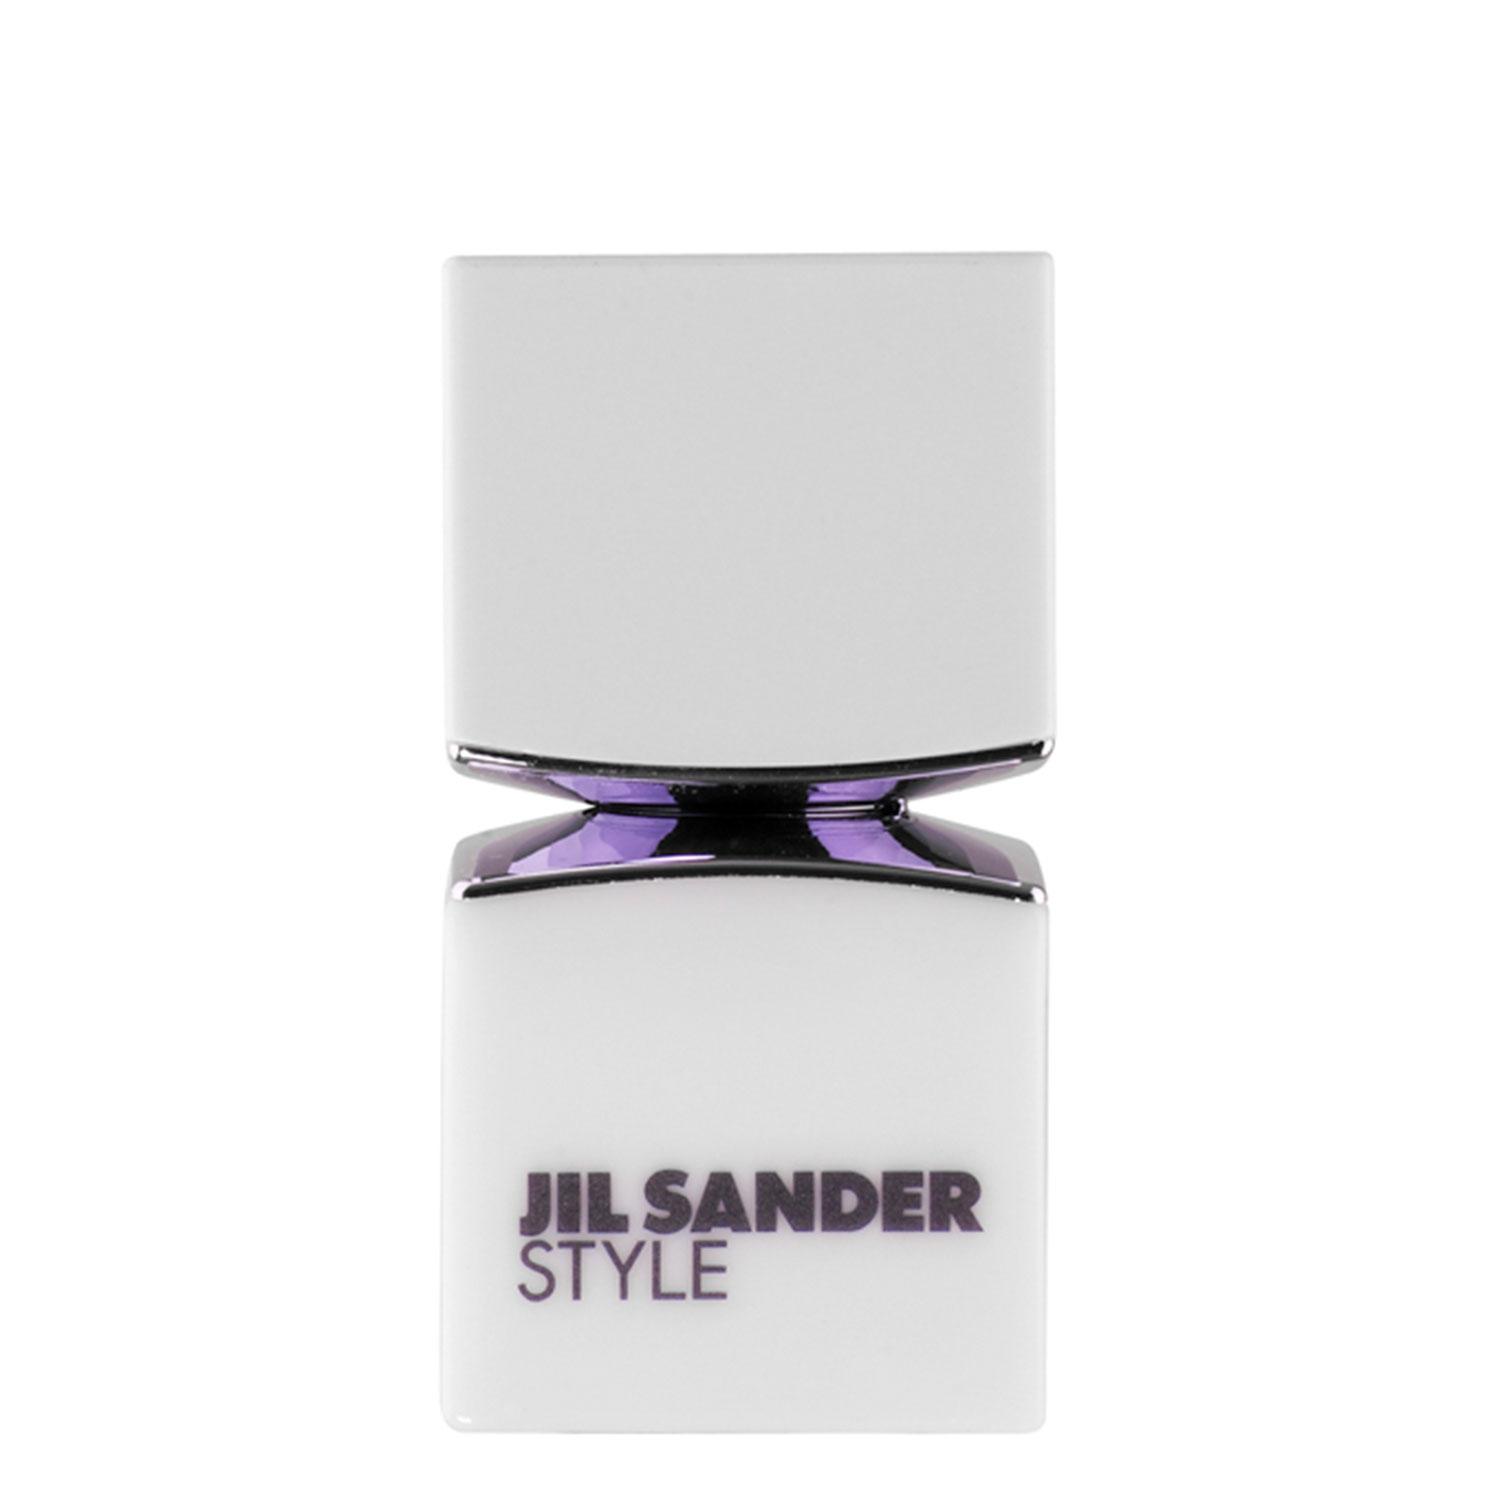 Jil Sander Style - Eau de Parfum